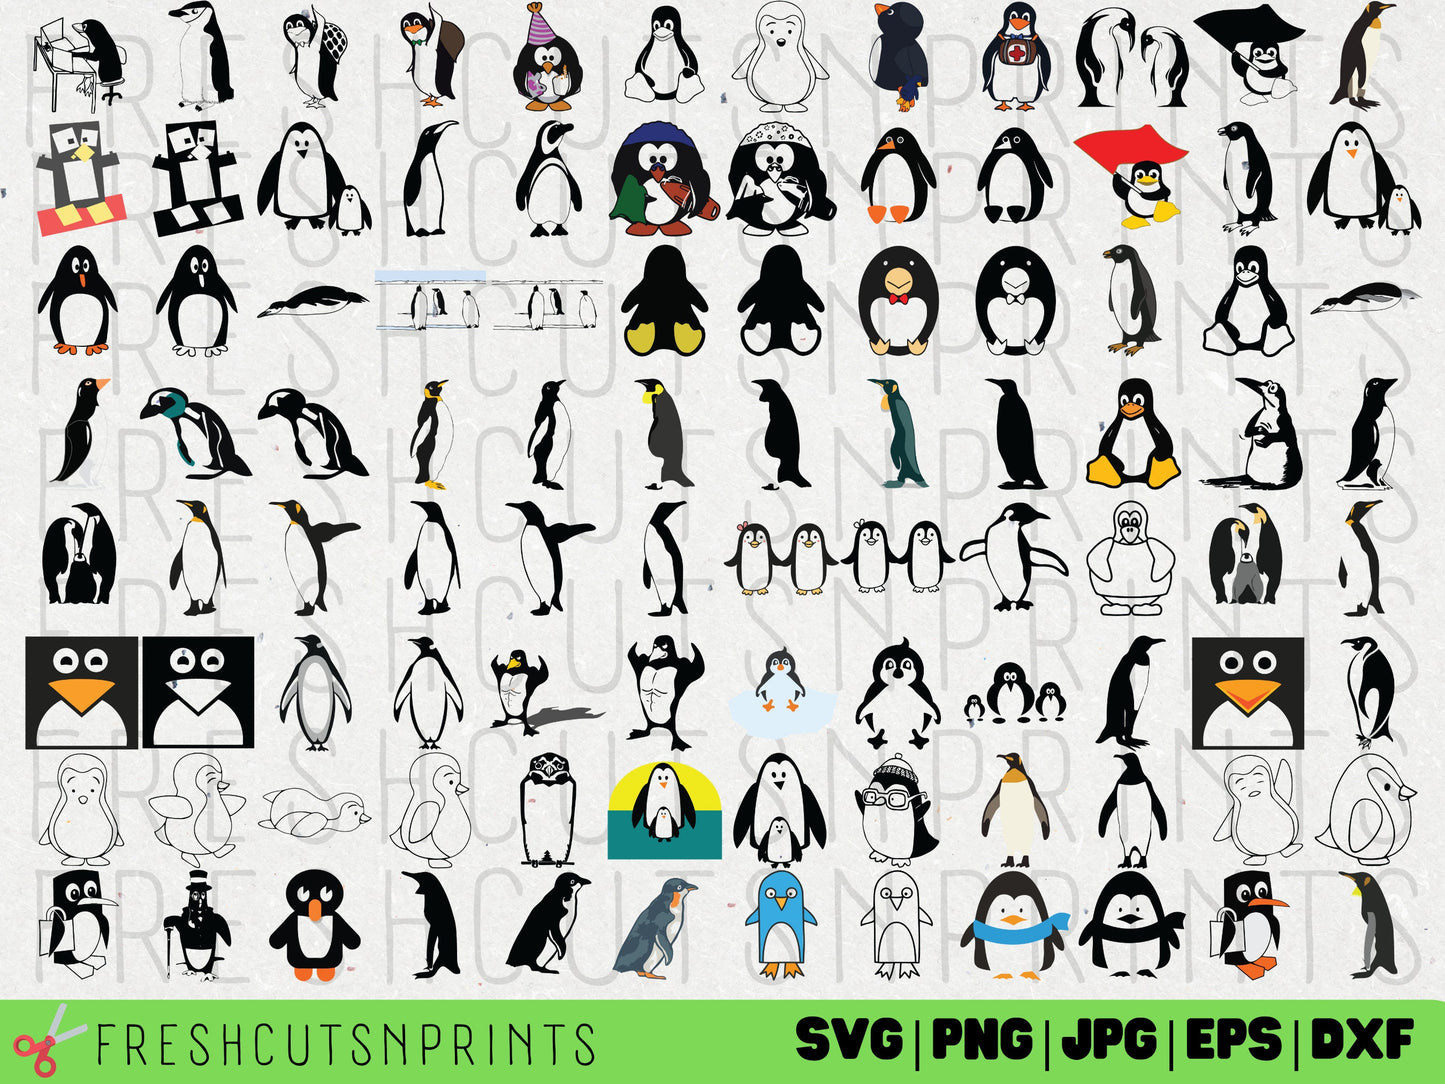 200+ Penguin SVG Bundle , Penguin Clipart Penguin Silhouette, Penguin SVG Bundle, Penguin Cricut SVG, Penguin cut file, Commercial Use